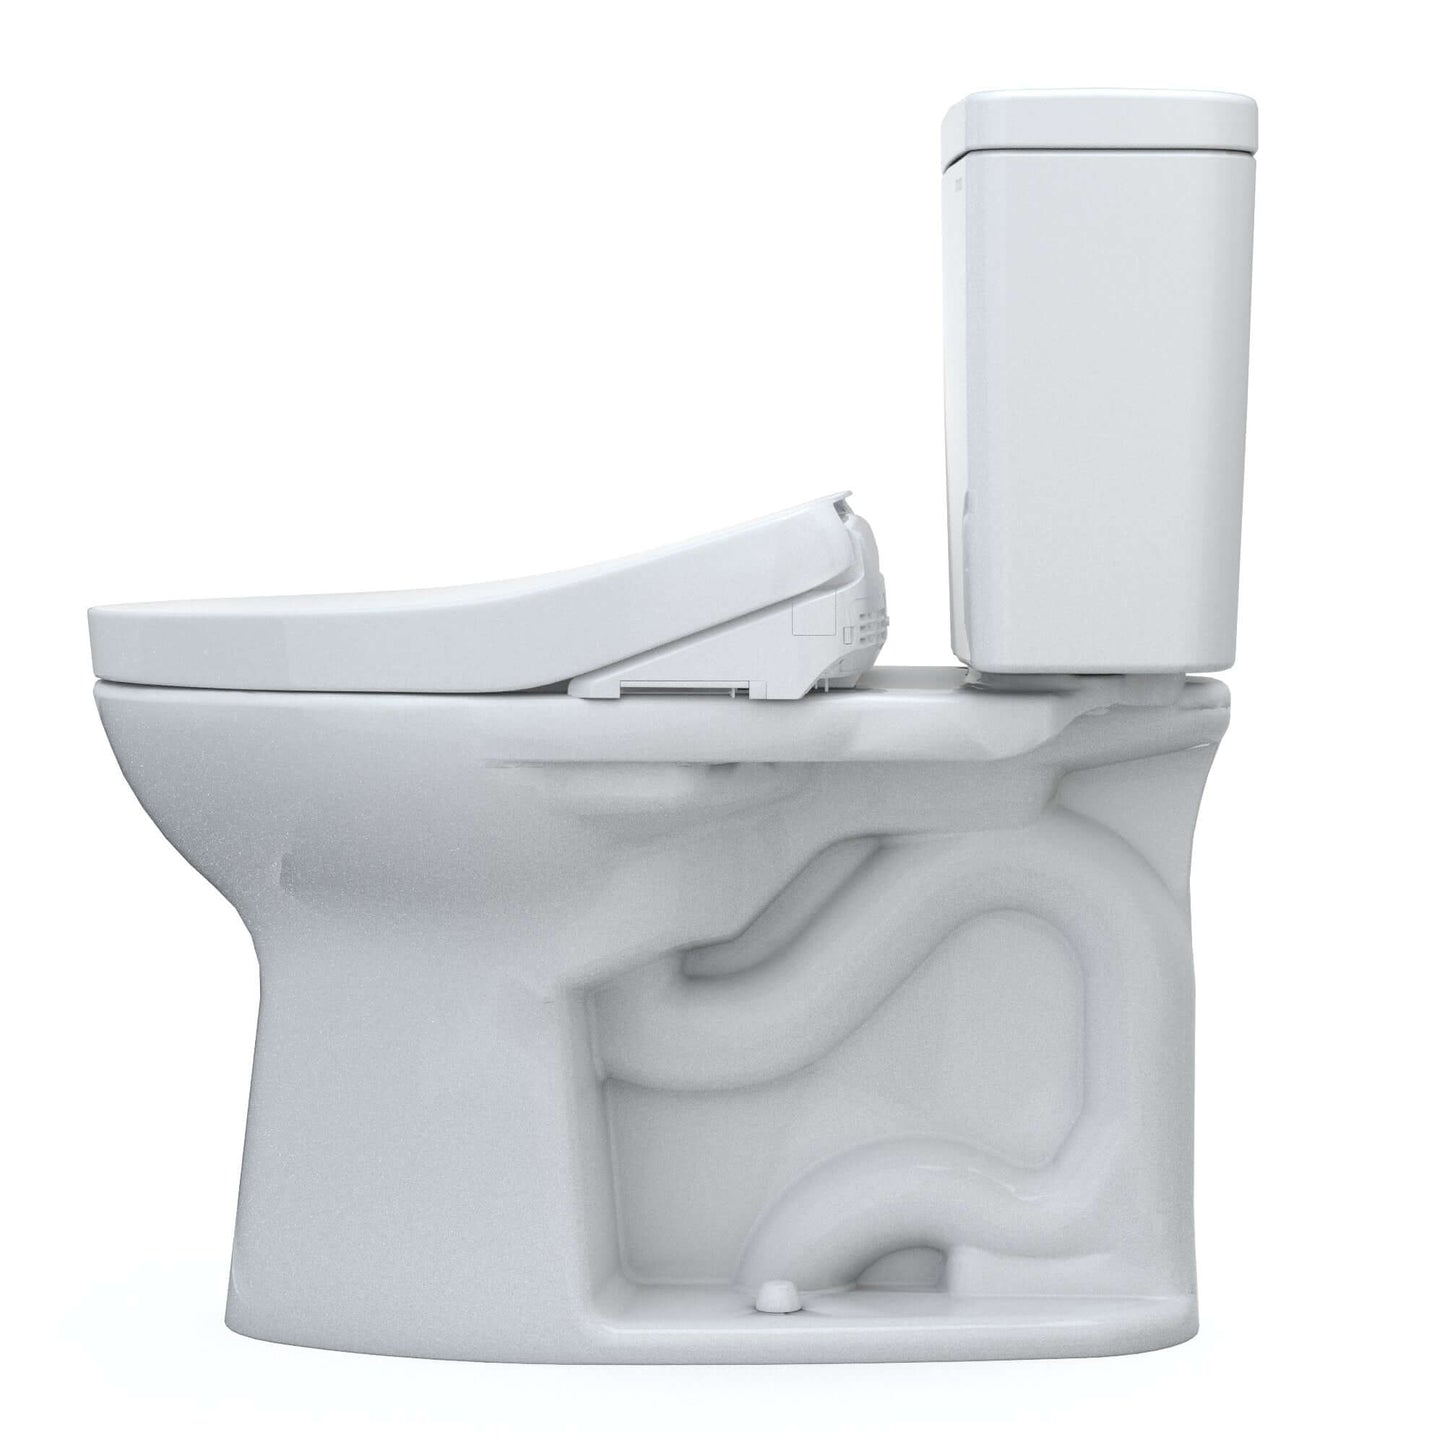 TOTO Drake WASHLET+ Two-Piece 1.6 GPF Standard Height Toilet with S500e Bidet Seat - MW7763046CSG#01